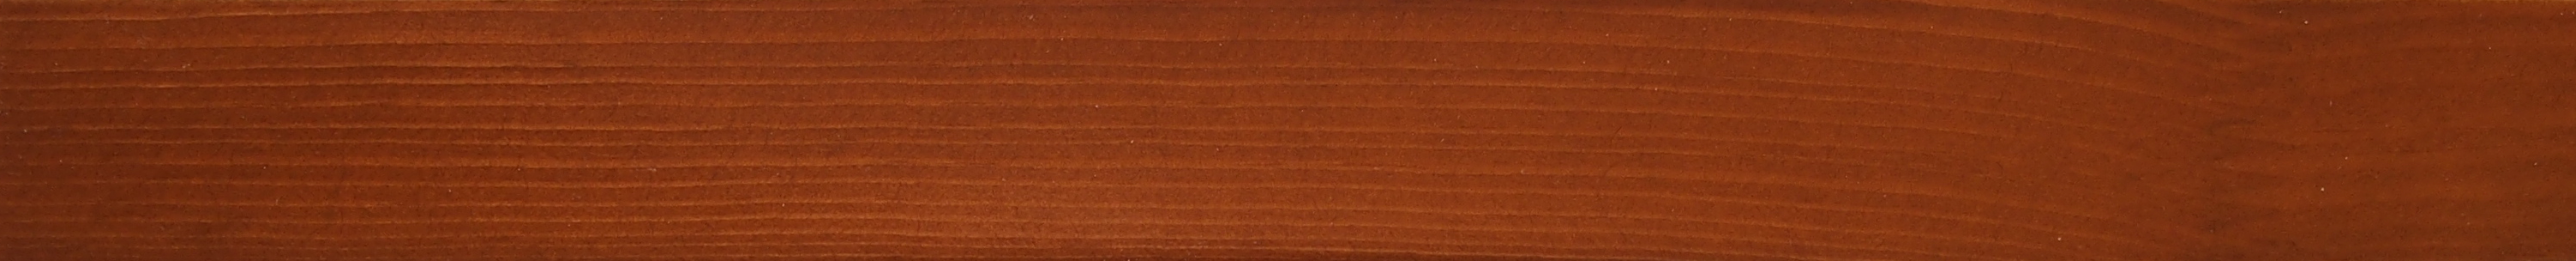 Трехстворчатое деревянное окно из сосны Модель 019 Тик